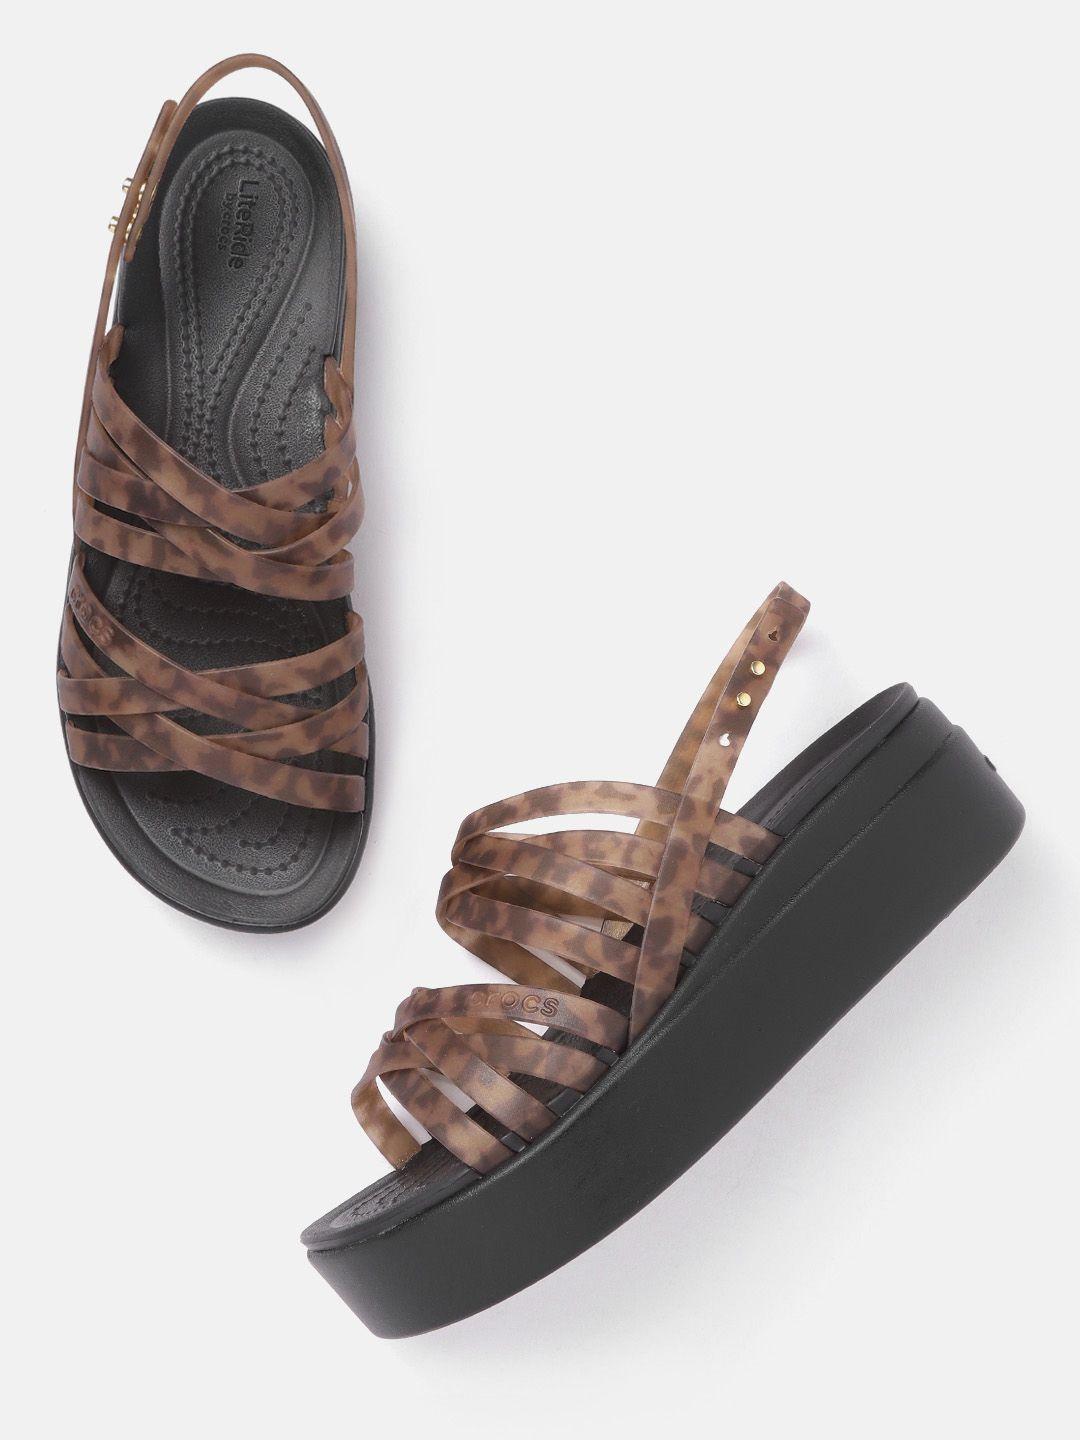 crocs-women-brown-printed-wedge-heels